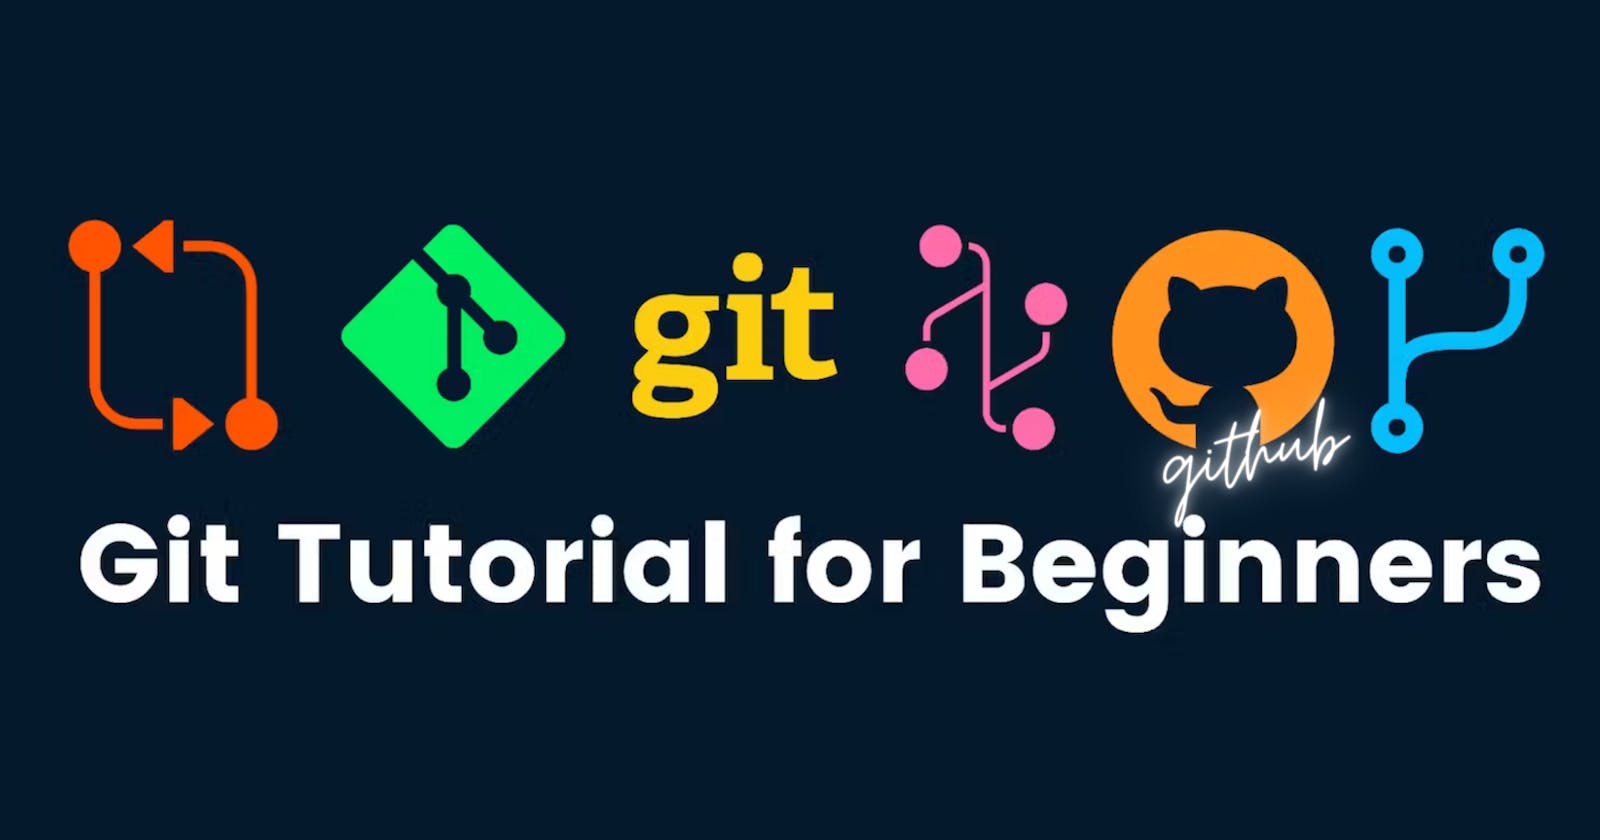 Git & GitHub: A Beginner's Guide